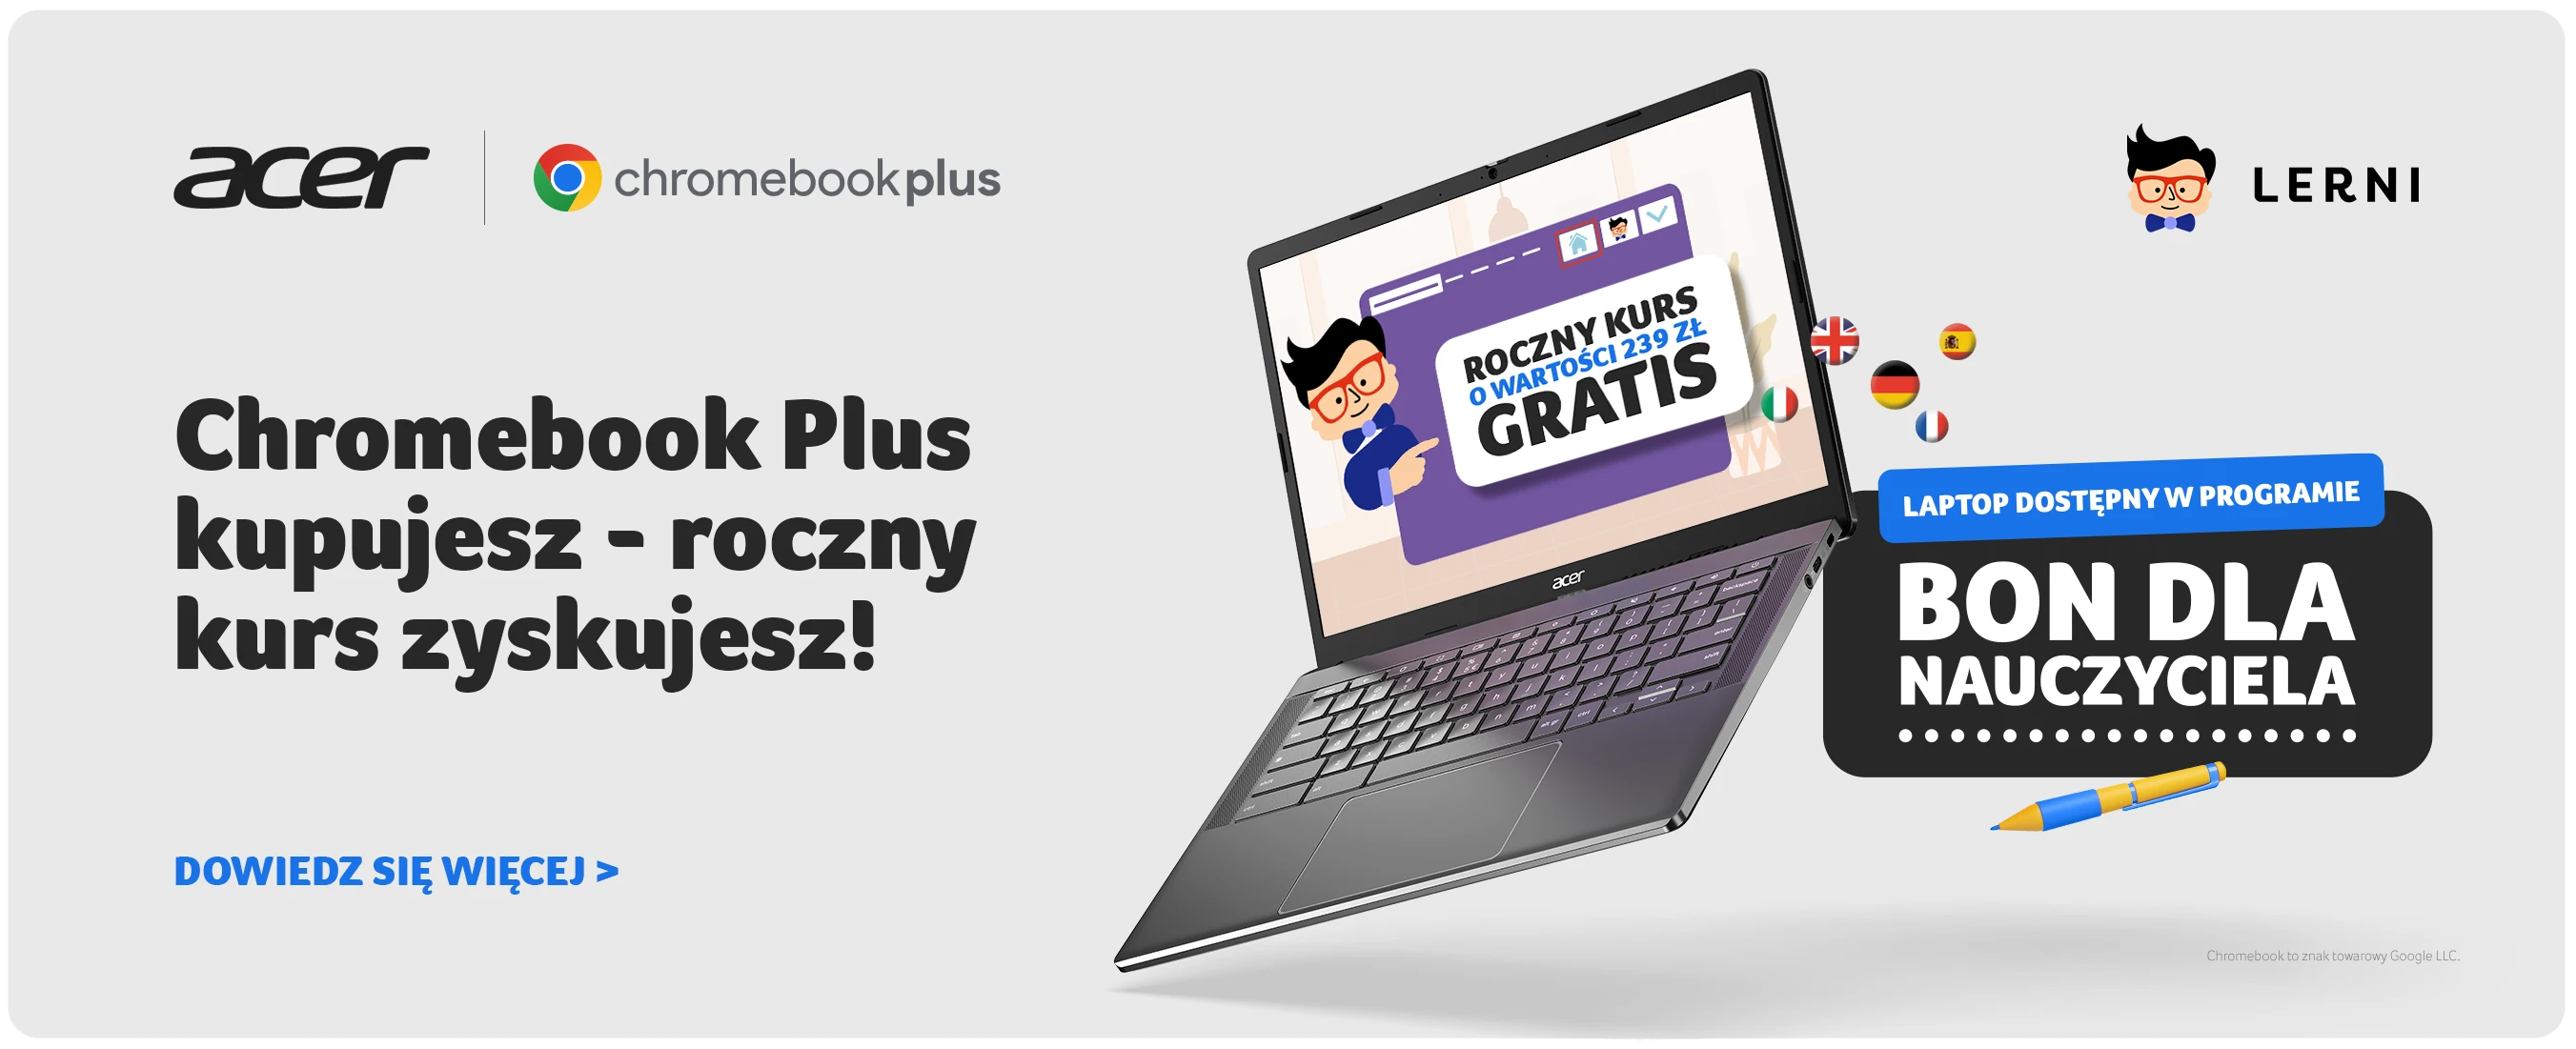 Chromebook Plus kupujesz - roczny kurs zyskujesz!